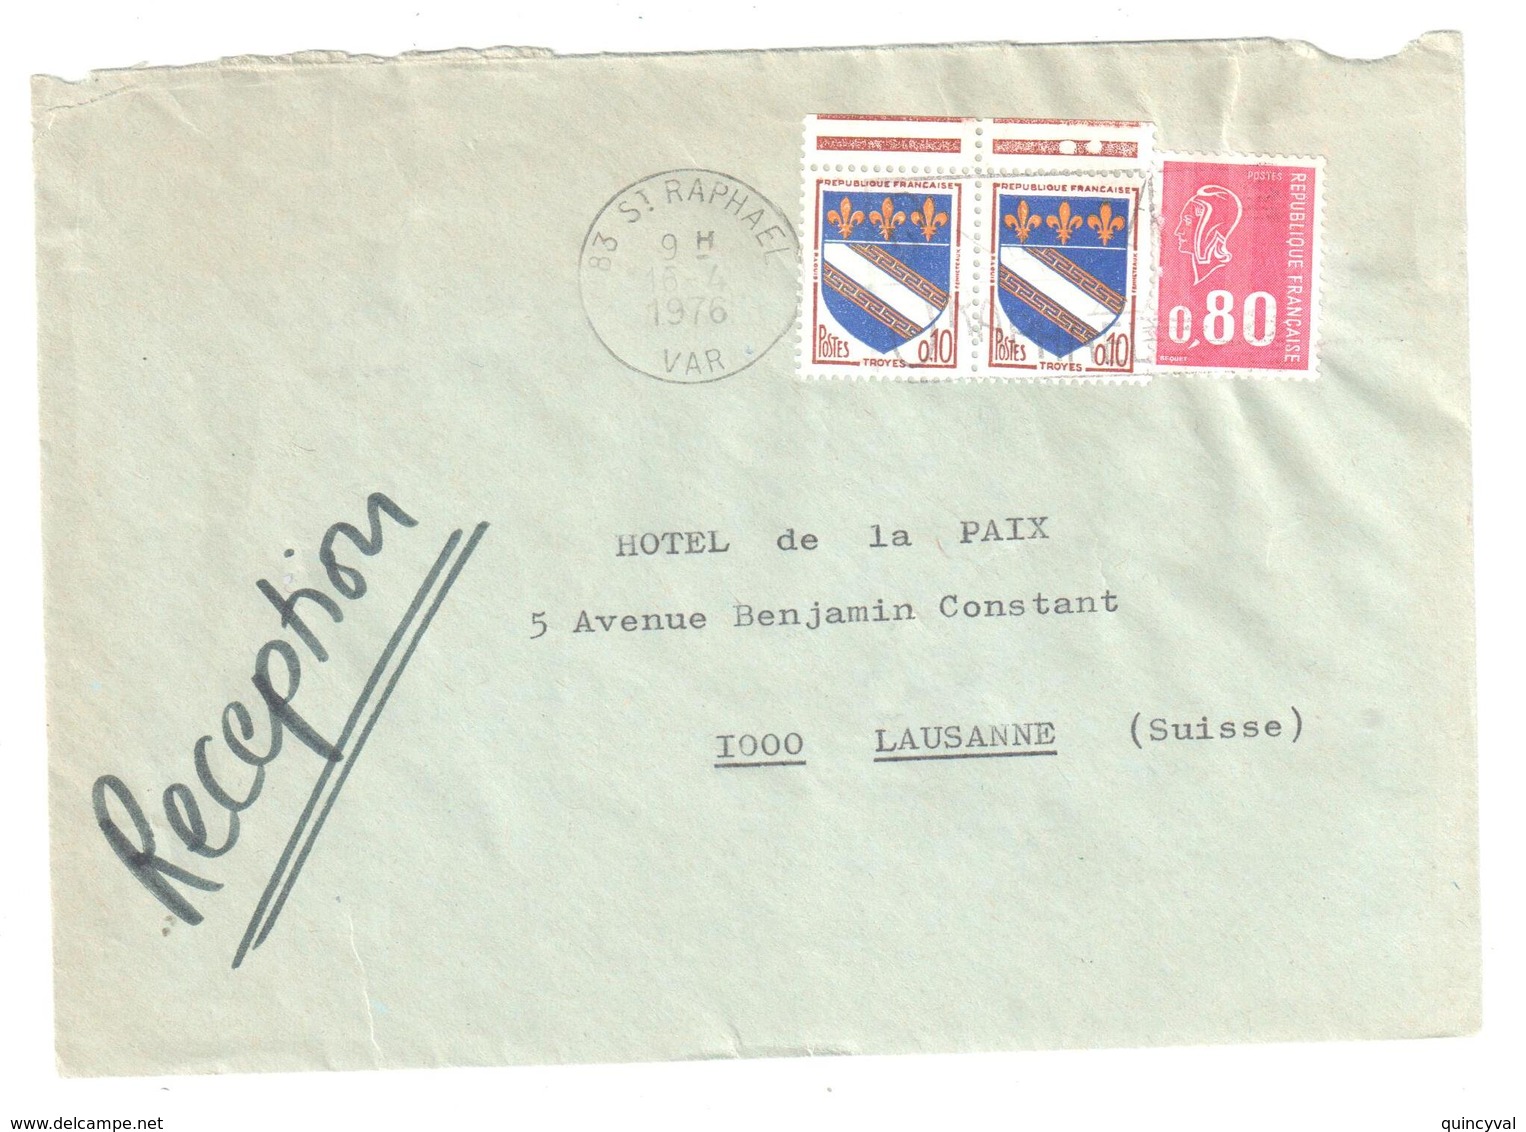 St RAPHAEL Var Lettre Destination Suisse Tarif Particulier Du 1 1 1976 80C Bequet 10c Troyes Yv 1353 1816 Dest Lausanne - Briefe U. Dokumente